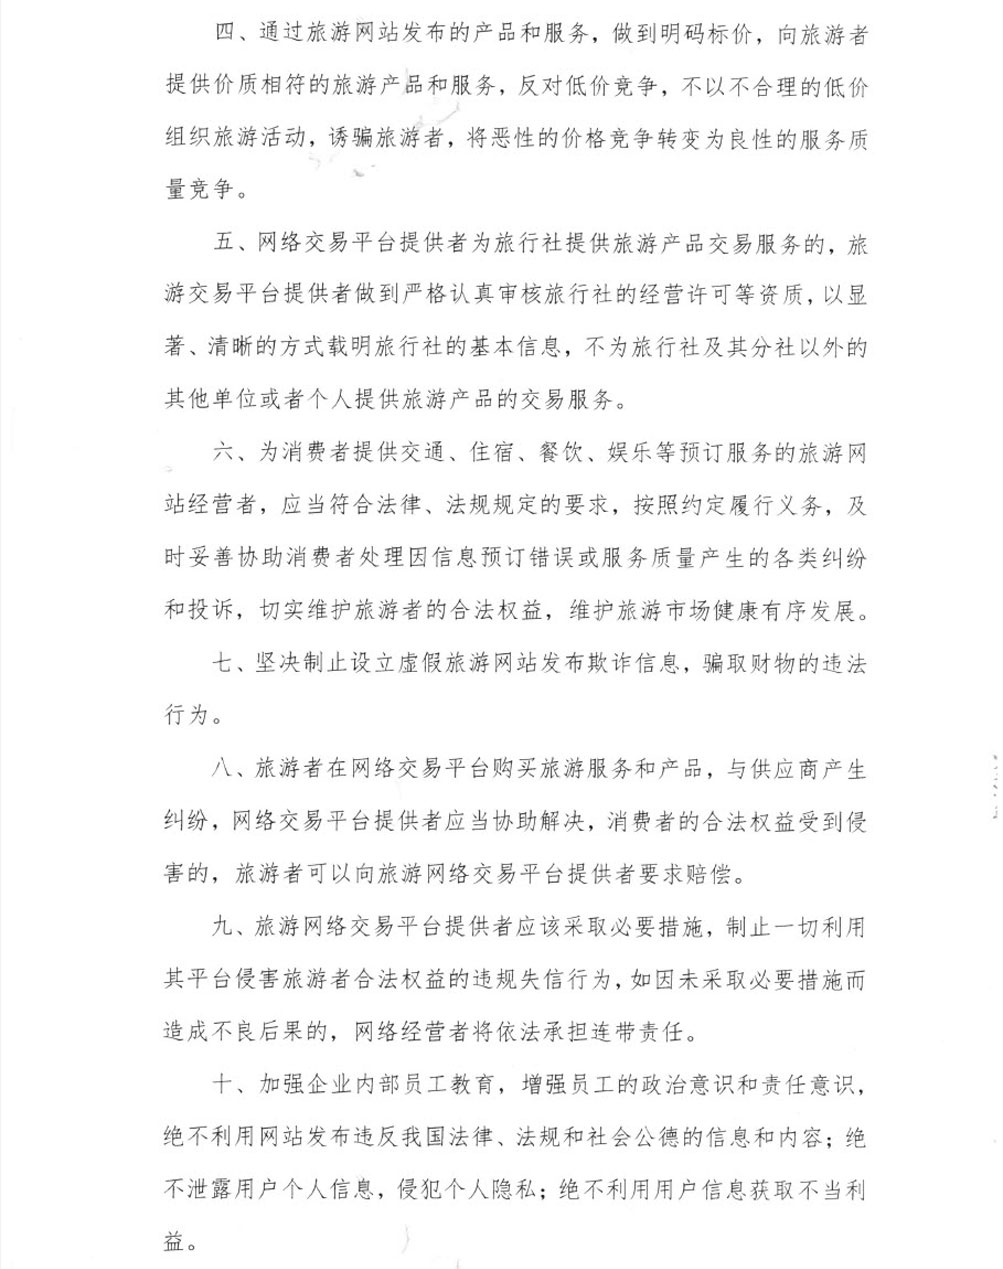 上海市旅游网站落实诚信建设主体责任承诺书